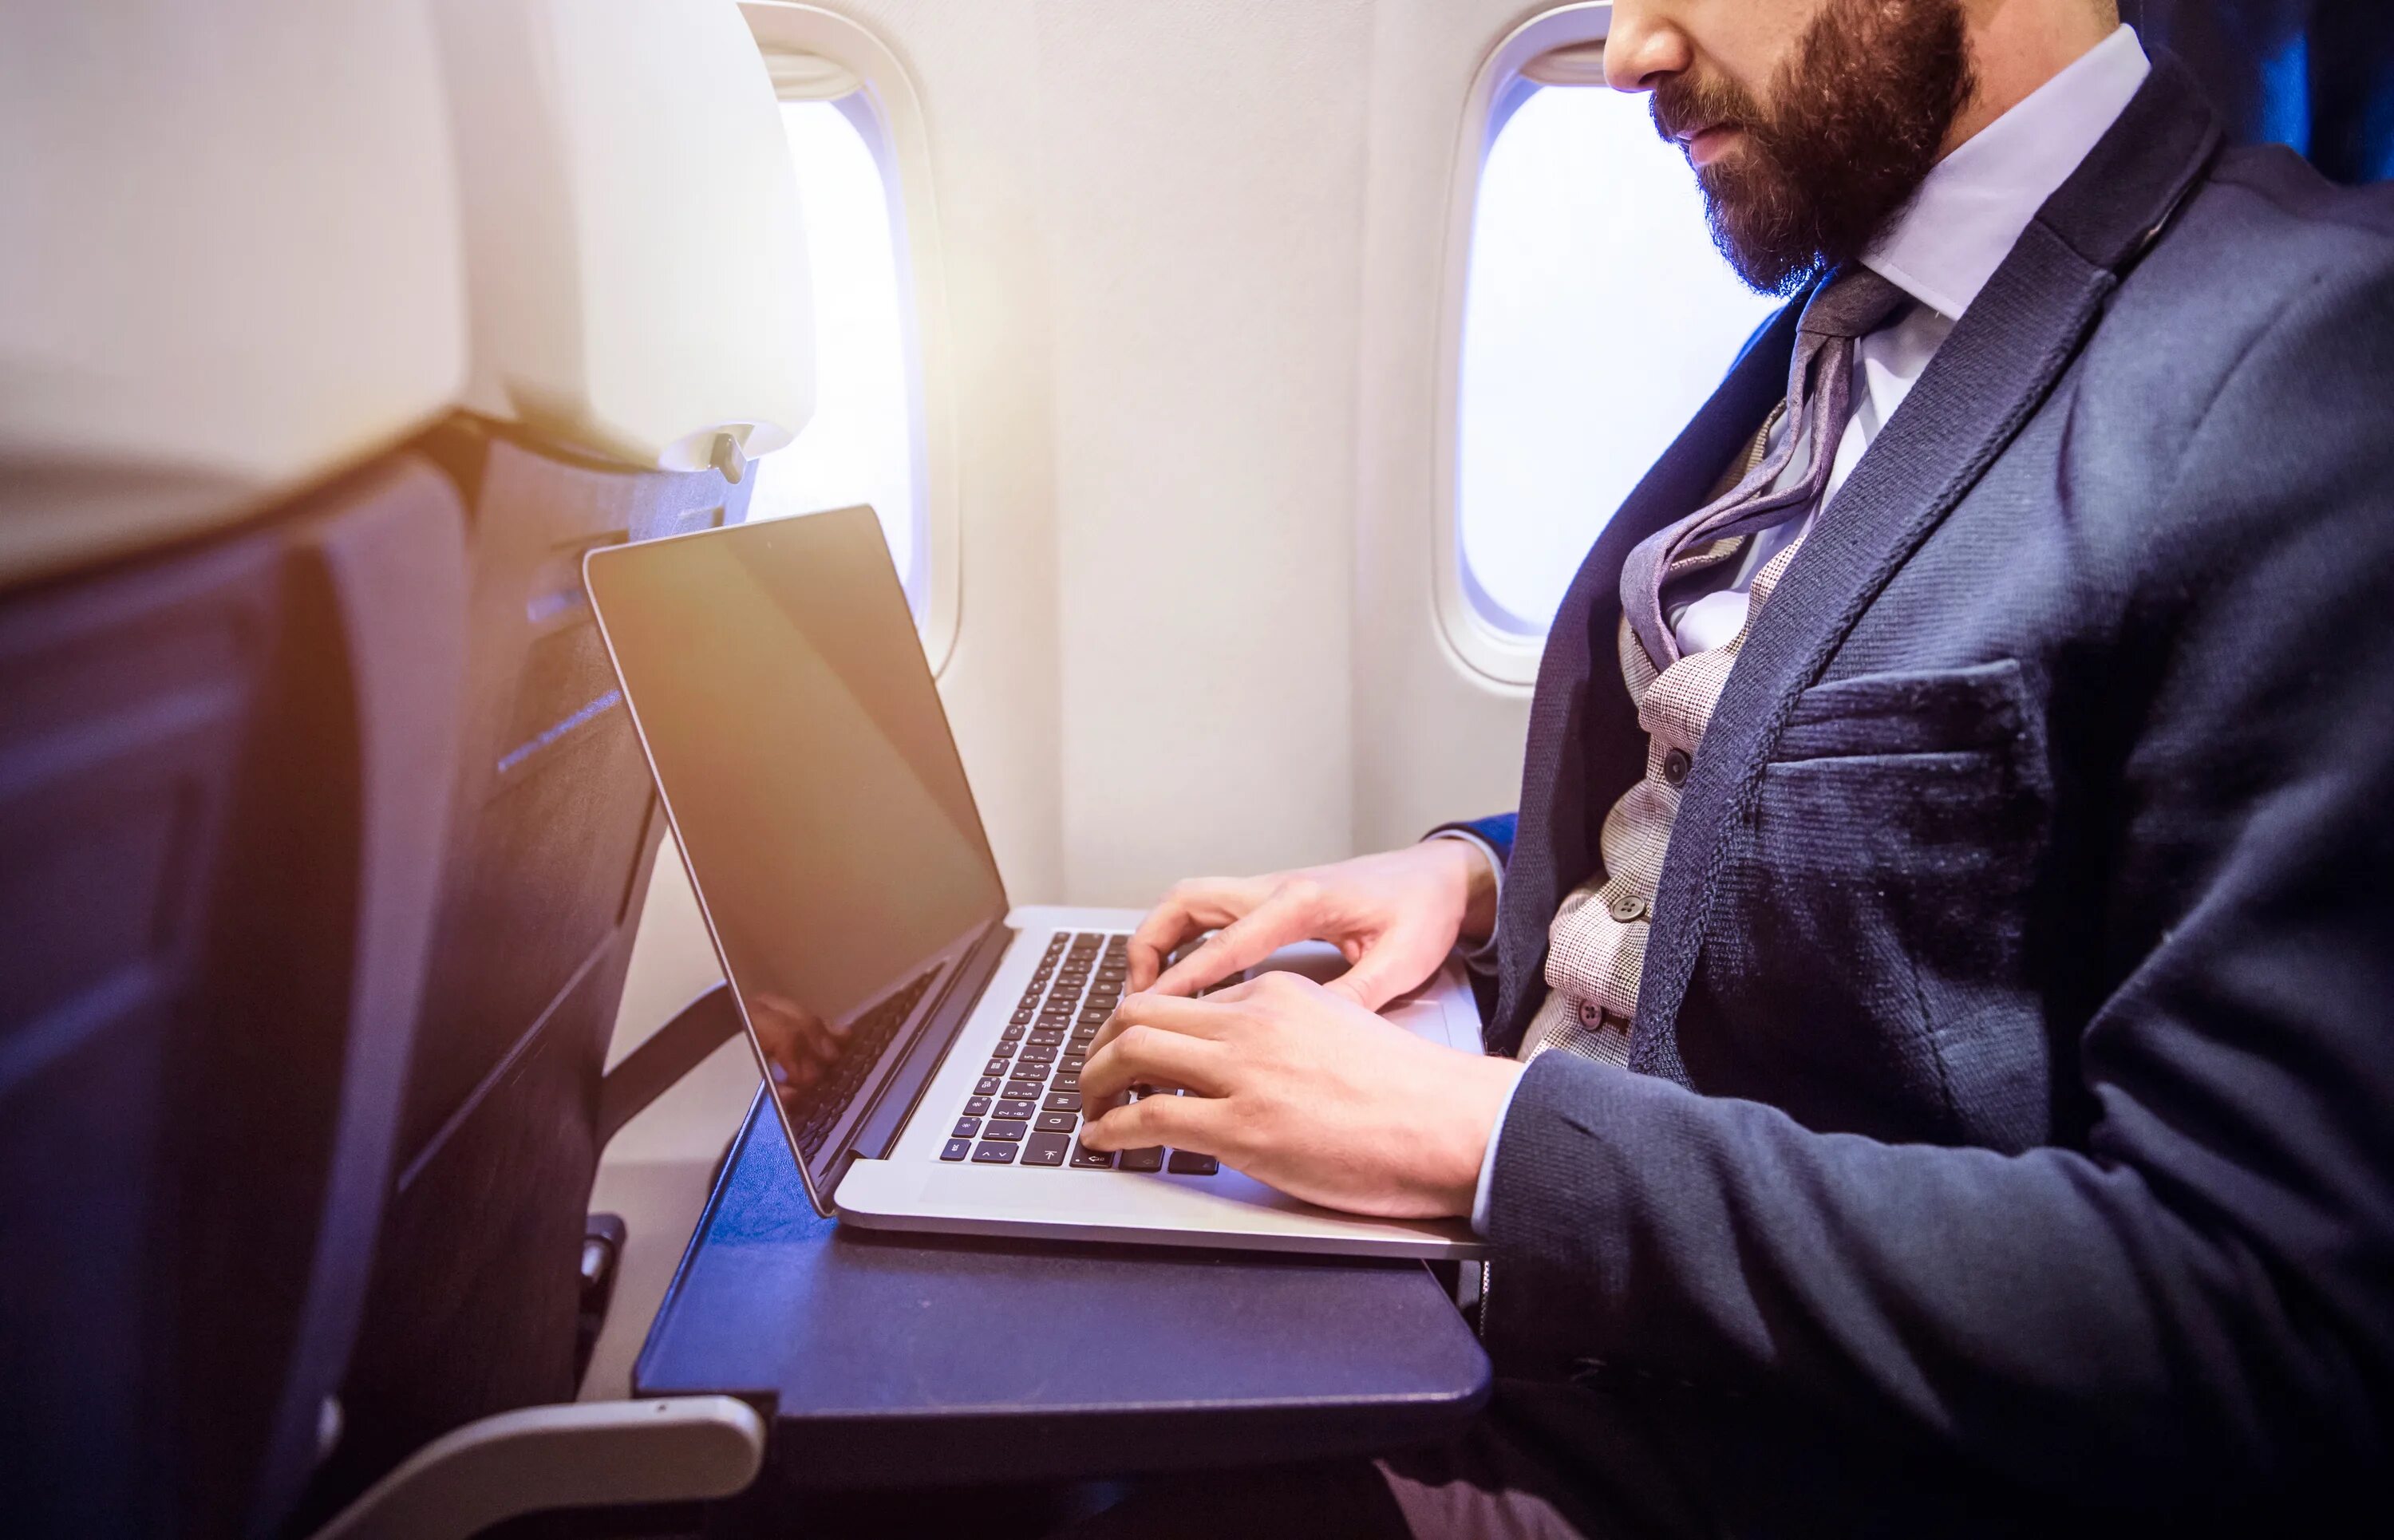 Бизнес класс иванов. Бизнесмен с ноутбуком. Бизнесмен с планшетом в самолете. Мужчина в самолете. Человек с ноутбуком.